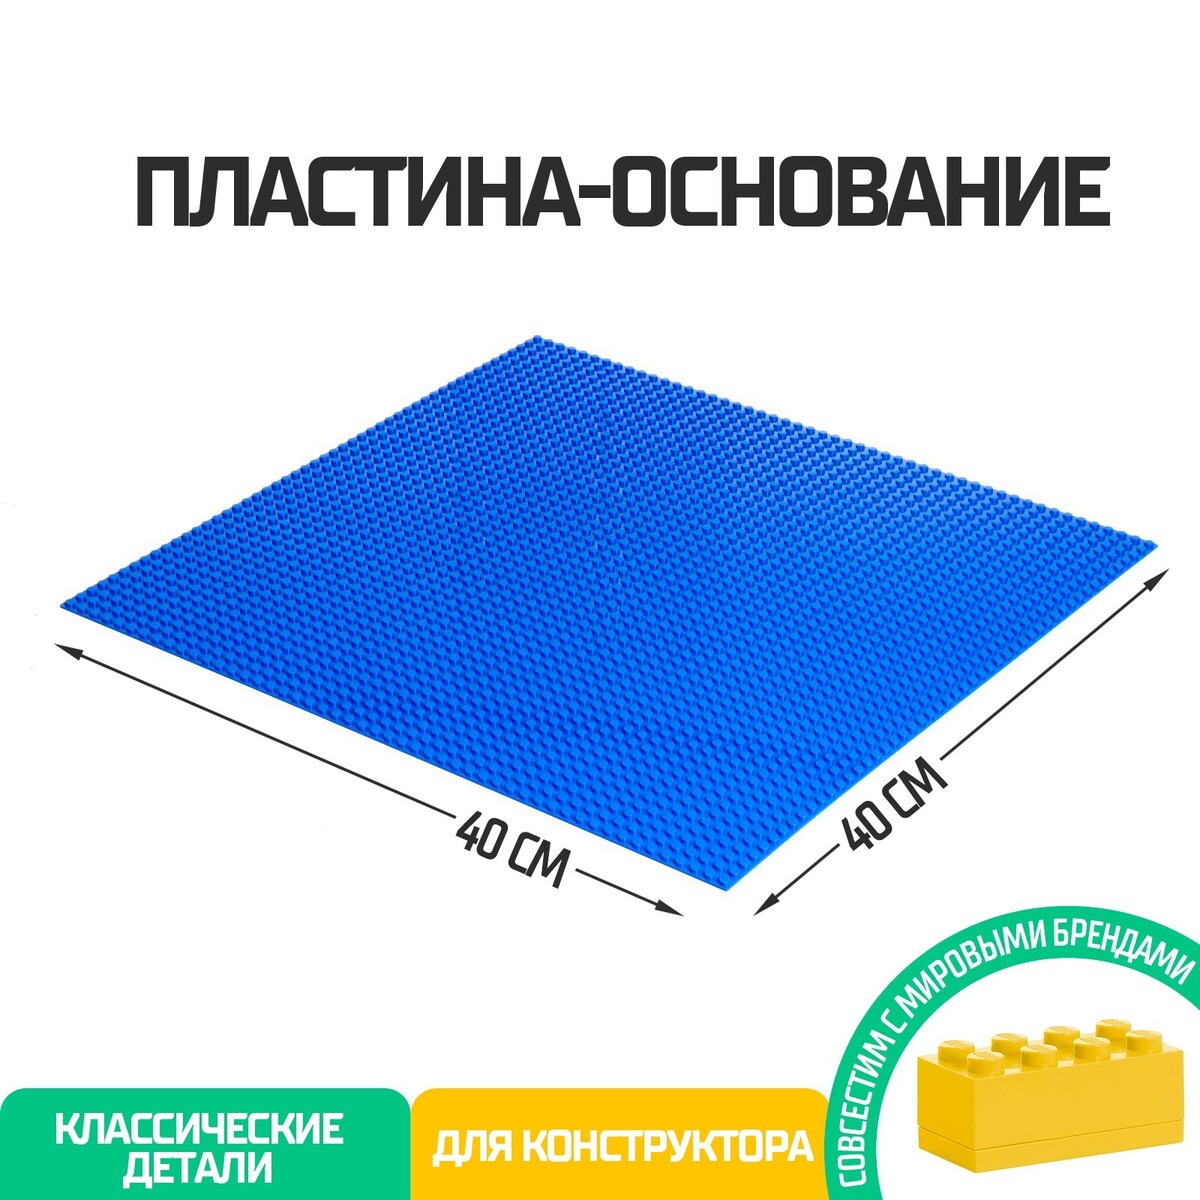 Пластина-основание для конструктора, 40 × 40 см, цвет синий пластина основание для конструктора 12 8 × 12 8 см салатовый